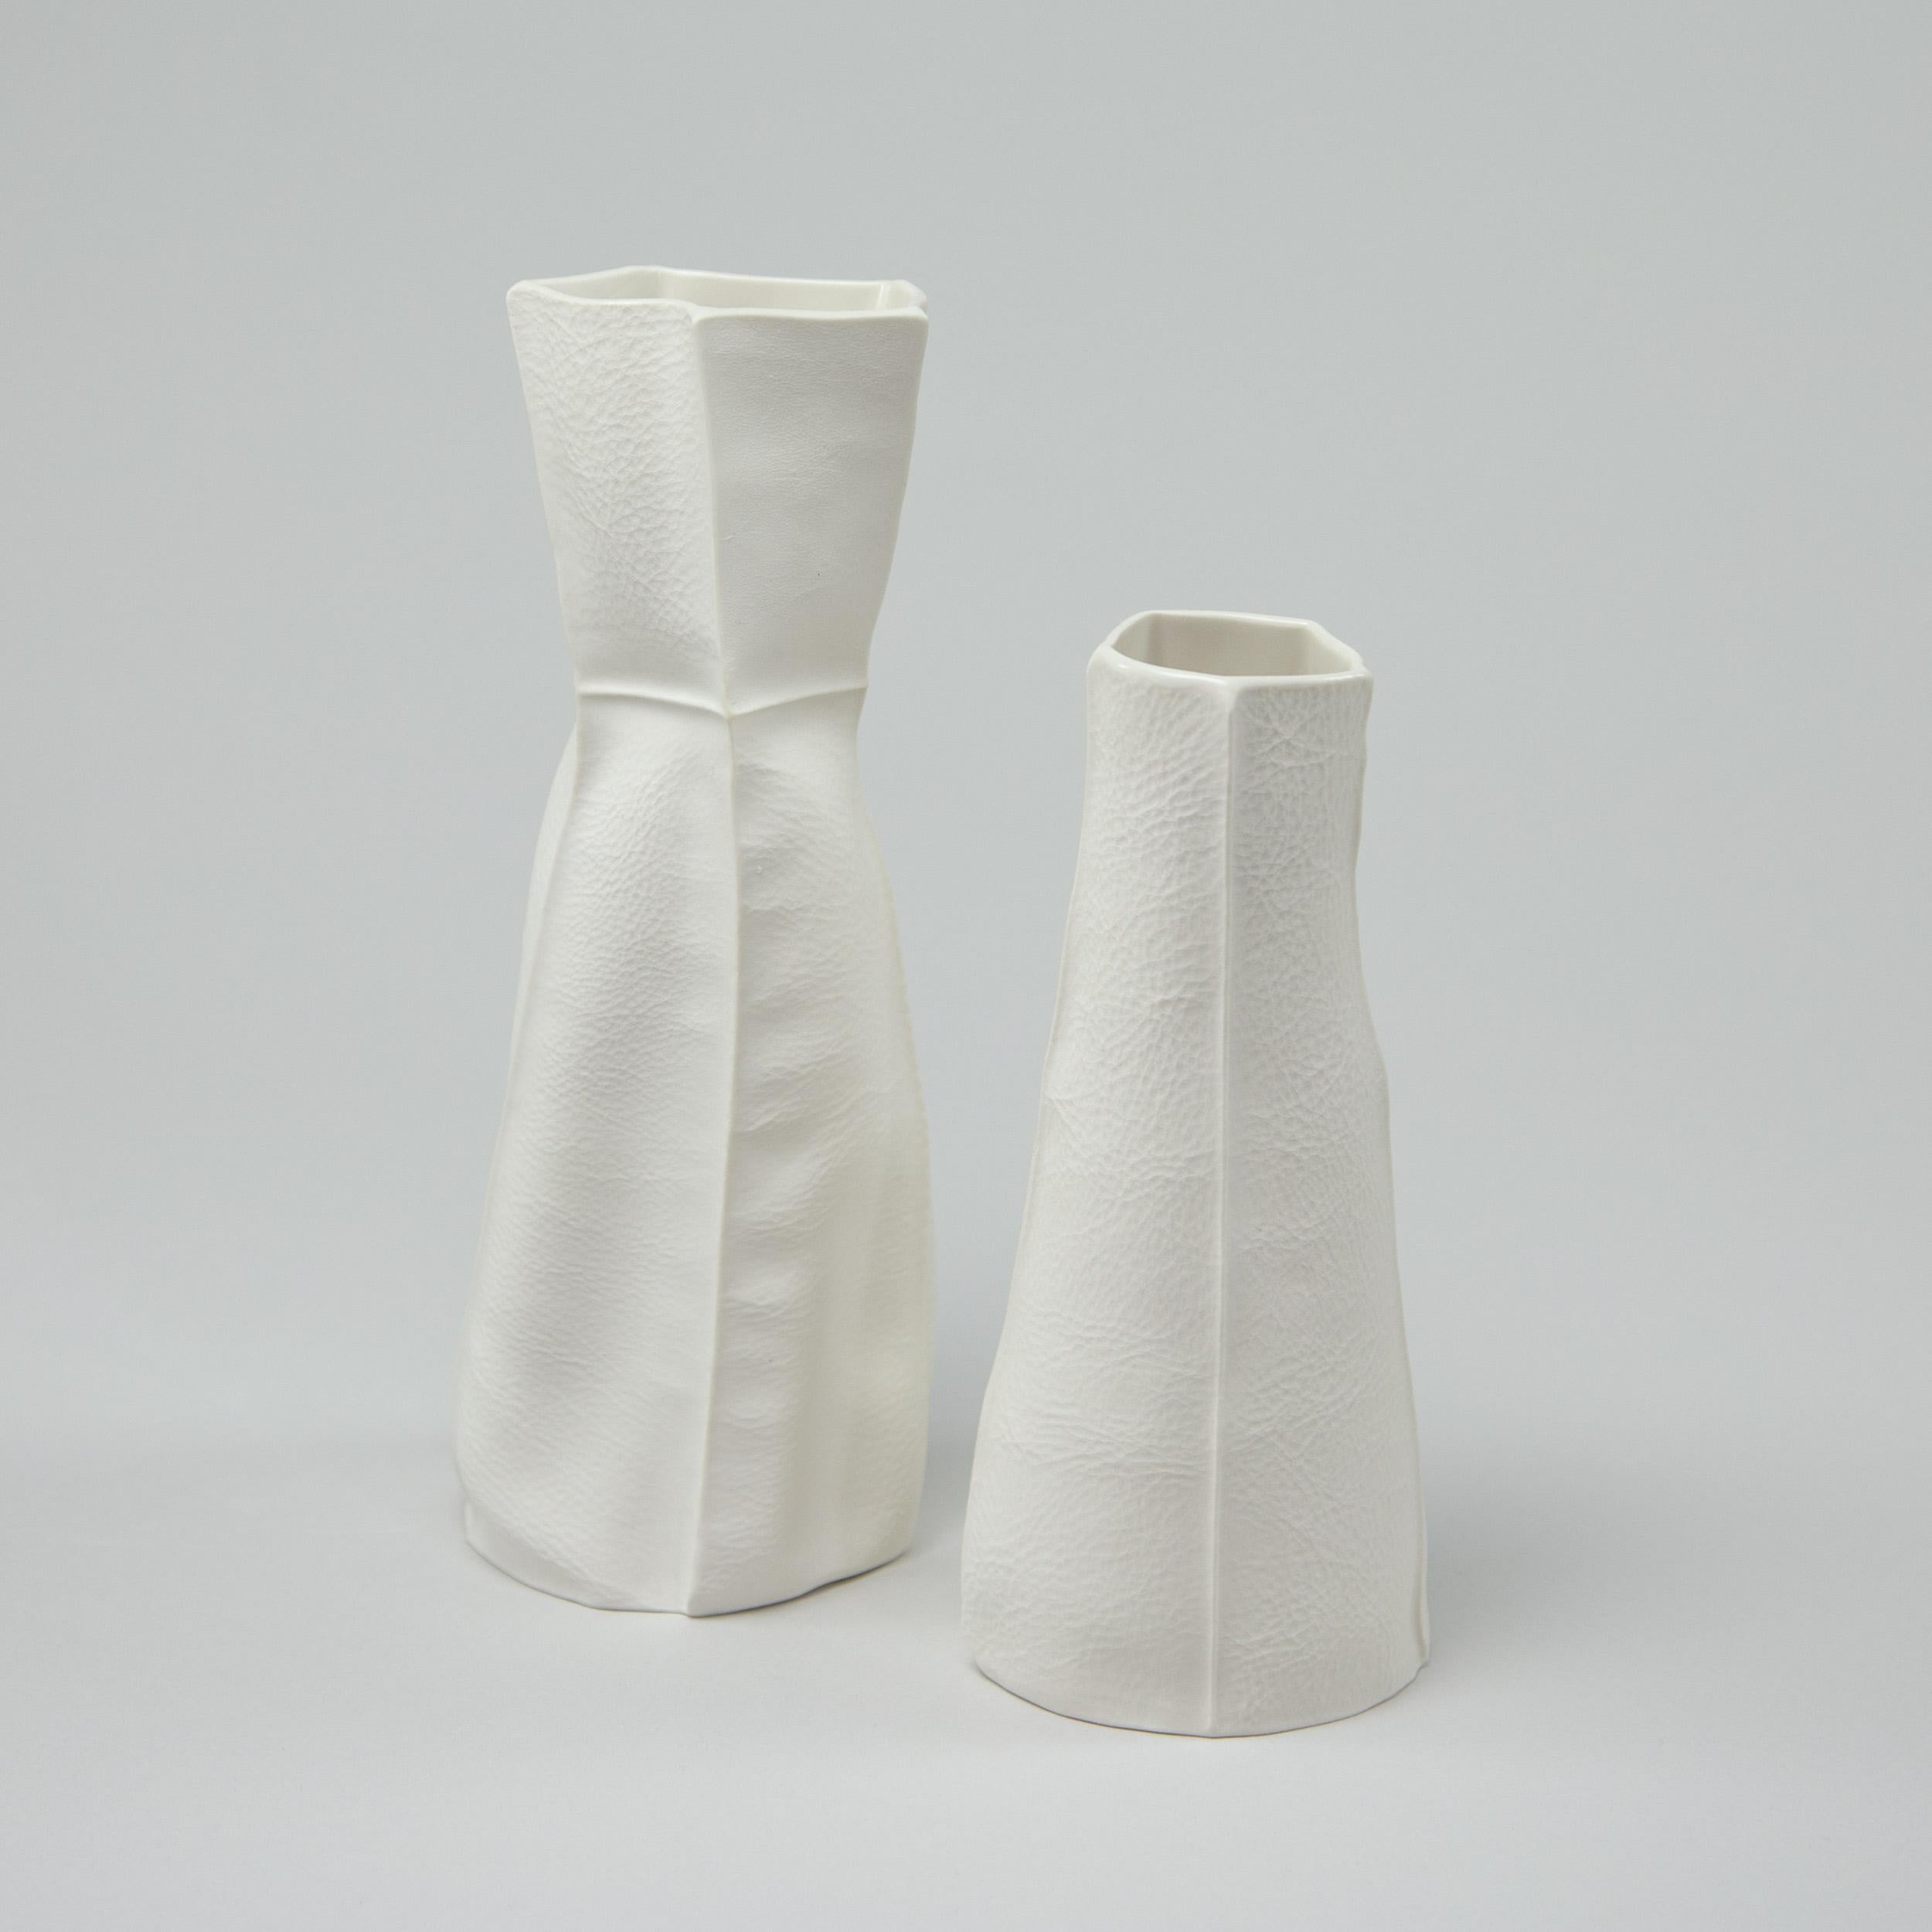 Paire de vases en porcelaine, tactiles et organiques, avec une surface extérieure texturée en cuir et un intérieur émaillé transparent. En raison du processus de production, chaque article est unique. L'ensemble comprend un vase moyen et un petit